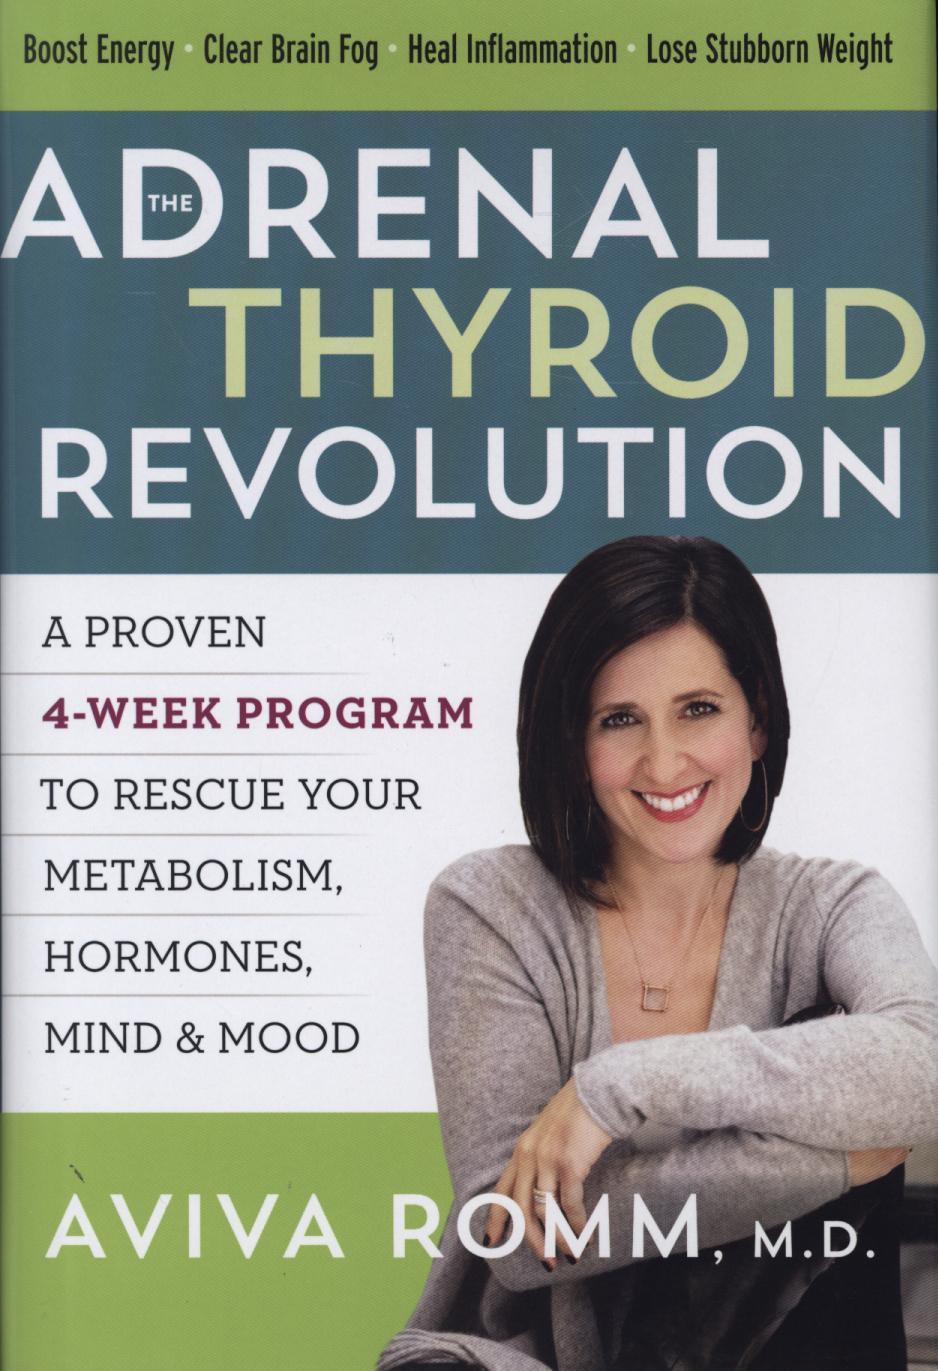 Adrenal Thyroid Revolution